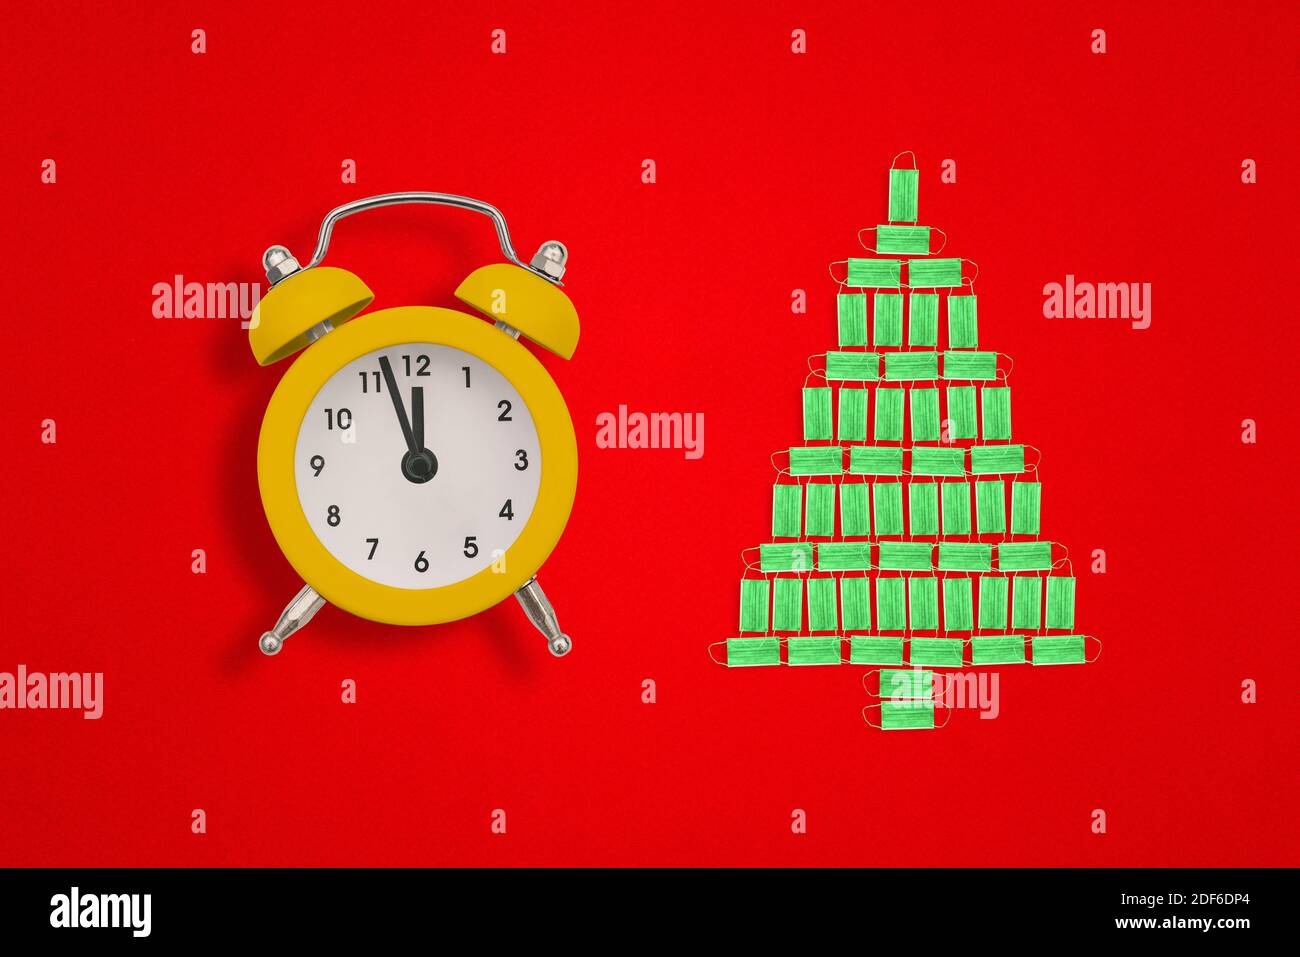 Weihnachtsbaum aus medizinischen Gesichtsmasken und Wecker auf rotem Hintergrund. Die Zeiger der Uhr zeigen zwölf Uhr. Weihnachtsidee. Stockfoto